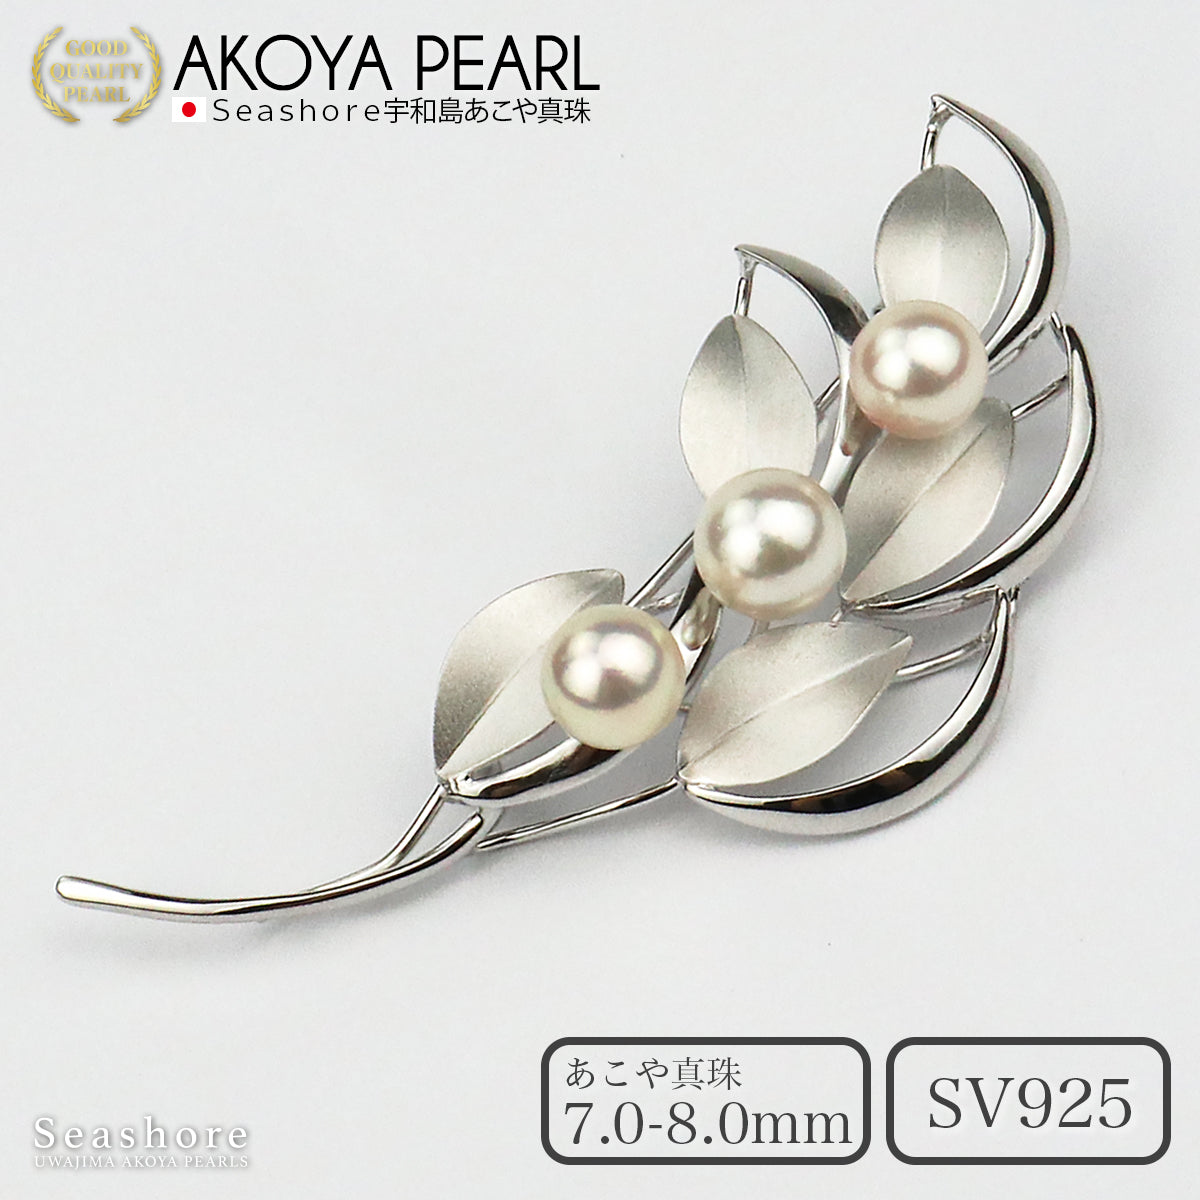 珍珠胸针叶 SV925 白色 7.0-8.0 毫米 Akoya 珍珠带灰色收纳盒 (3934)